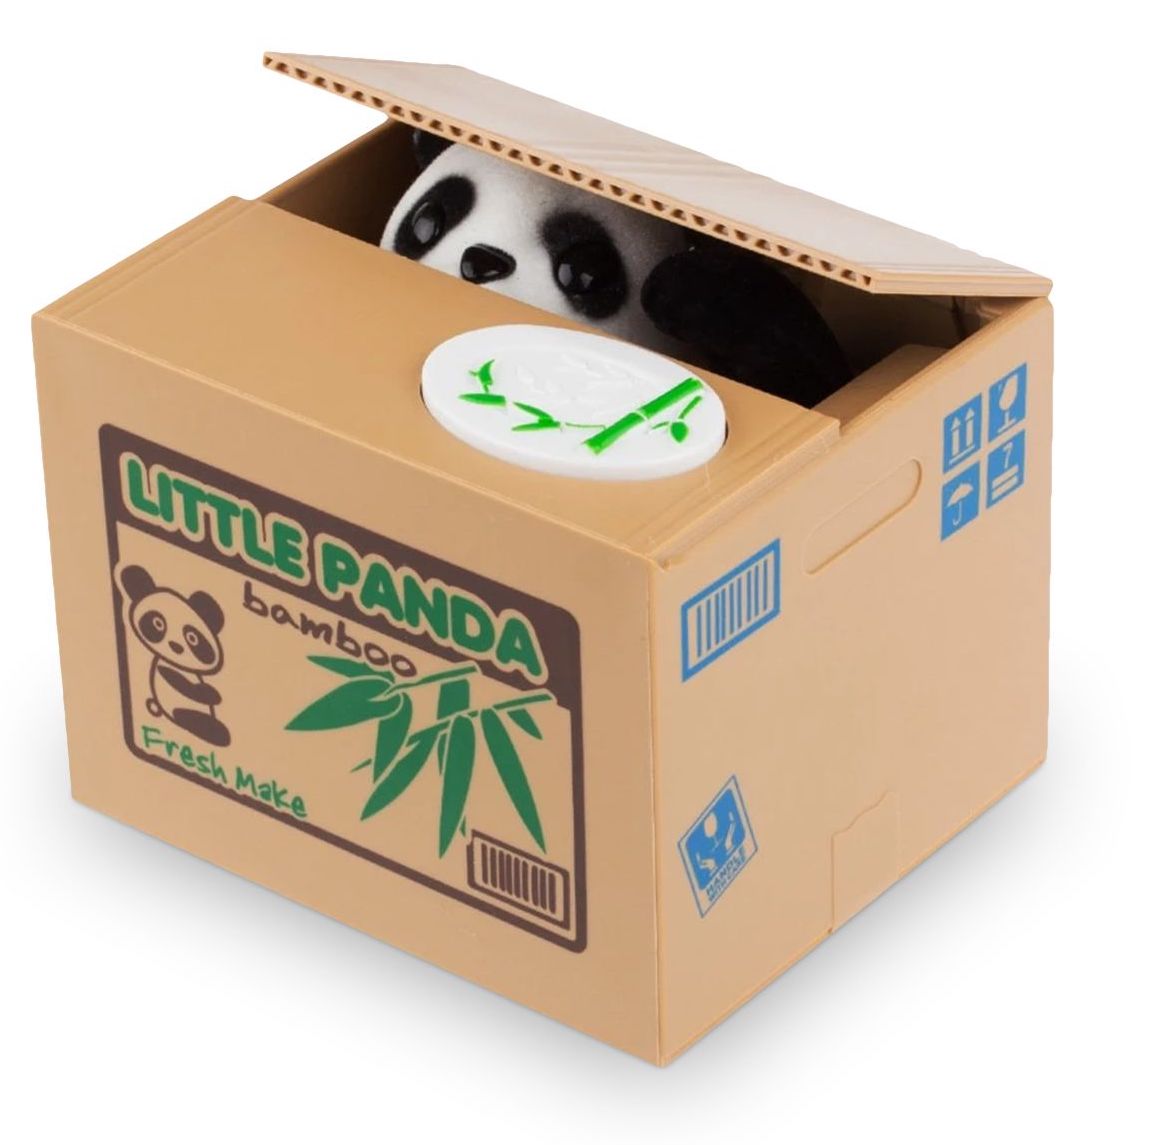 ΚΟΥΤΙ για κέρματα - ηλεκτρονικό κουτί μετρητών σε σχήμα PANDA